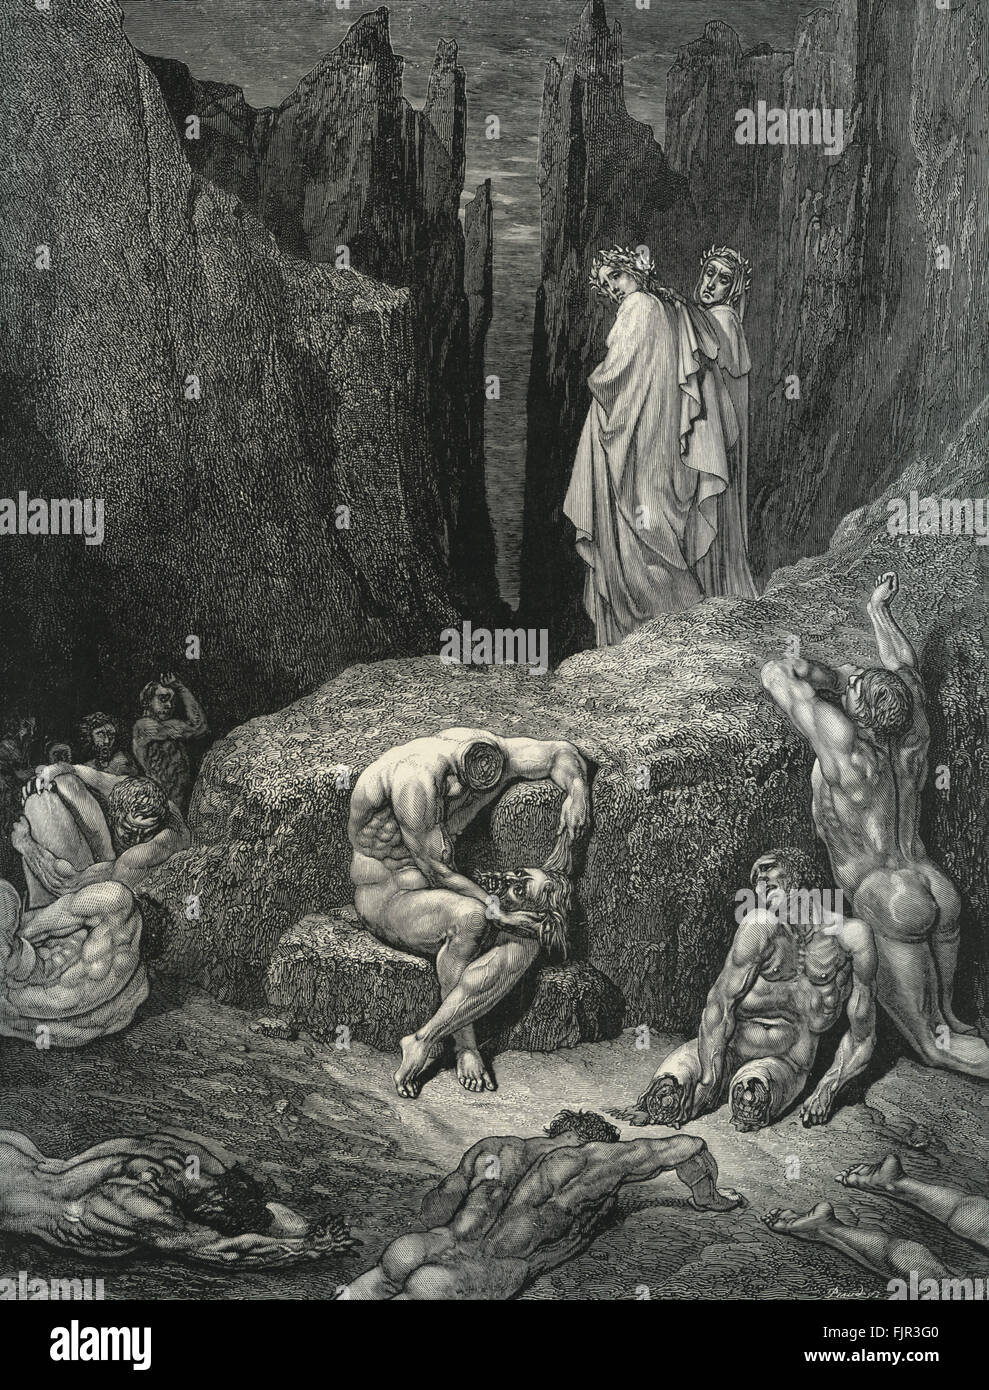 The Paris Review - Recap of Canto 29 of Dante's “Inferno”